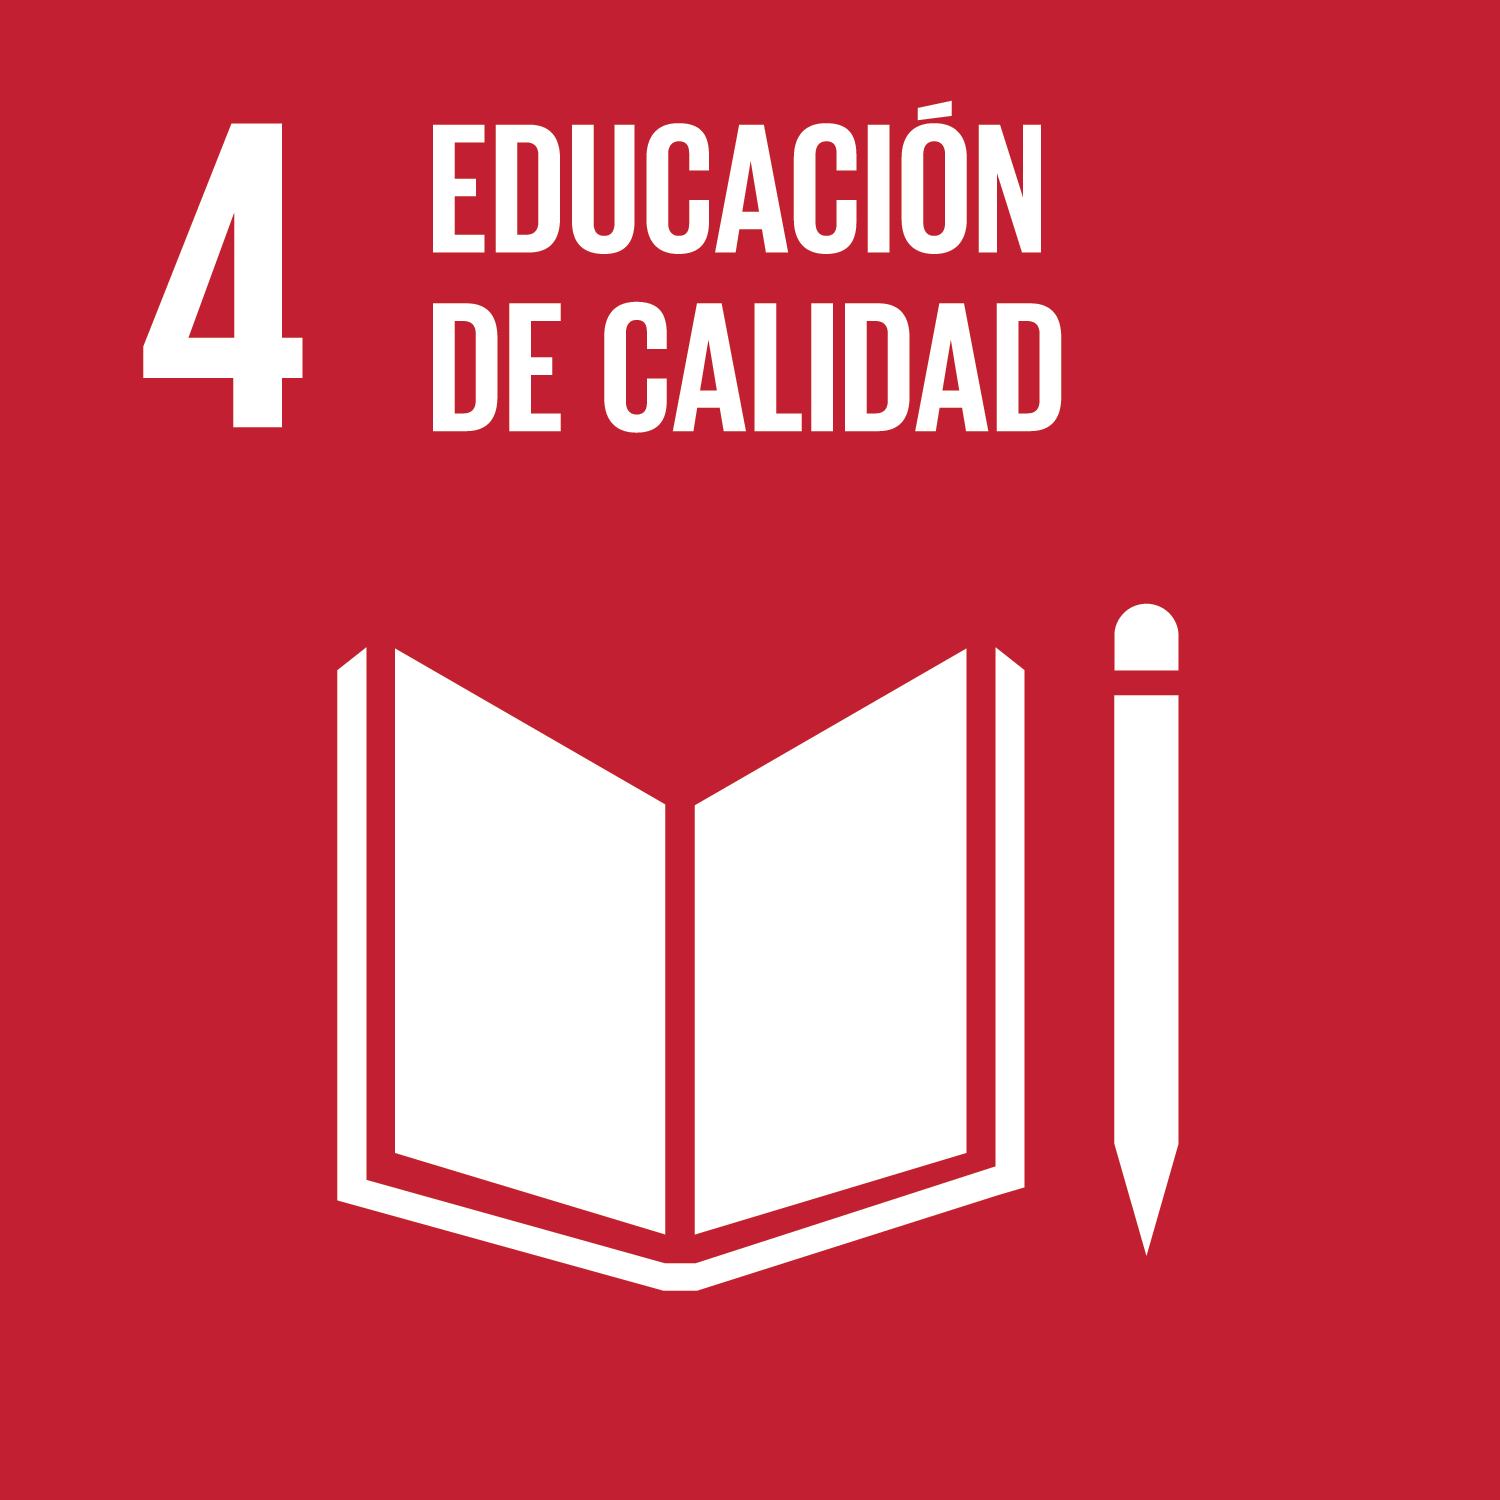 ODS Objetivo 4: Educación de calidad